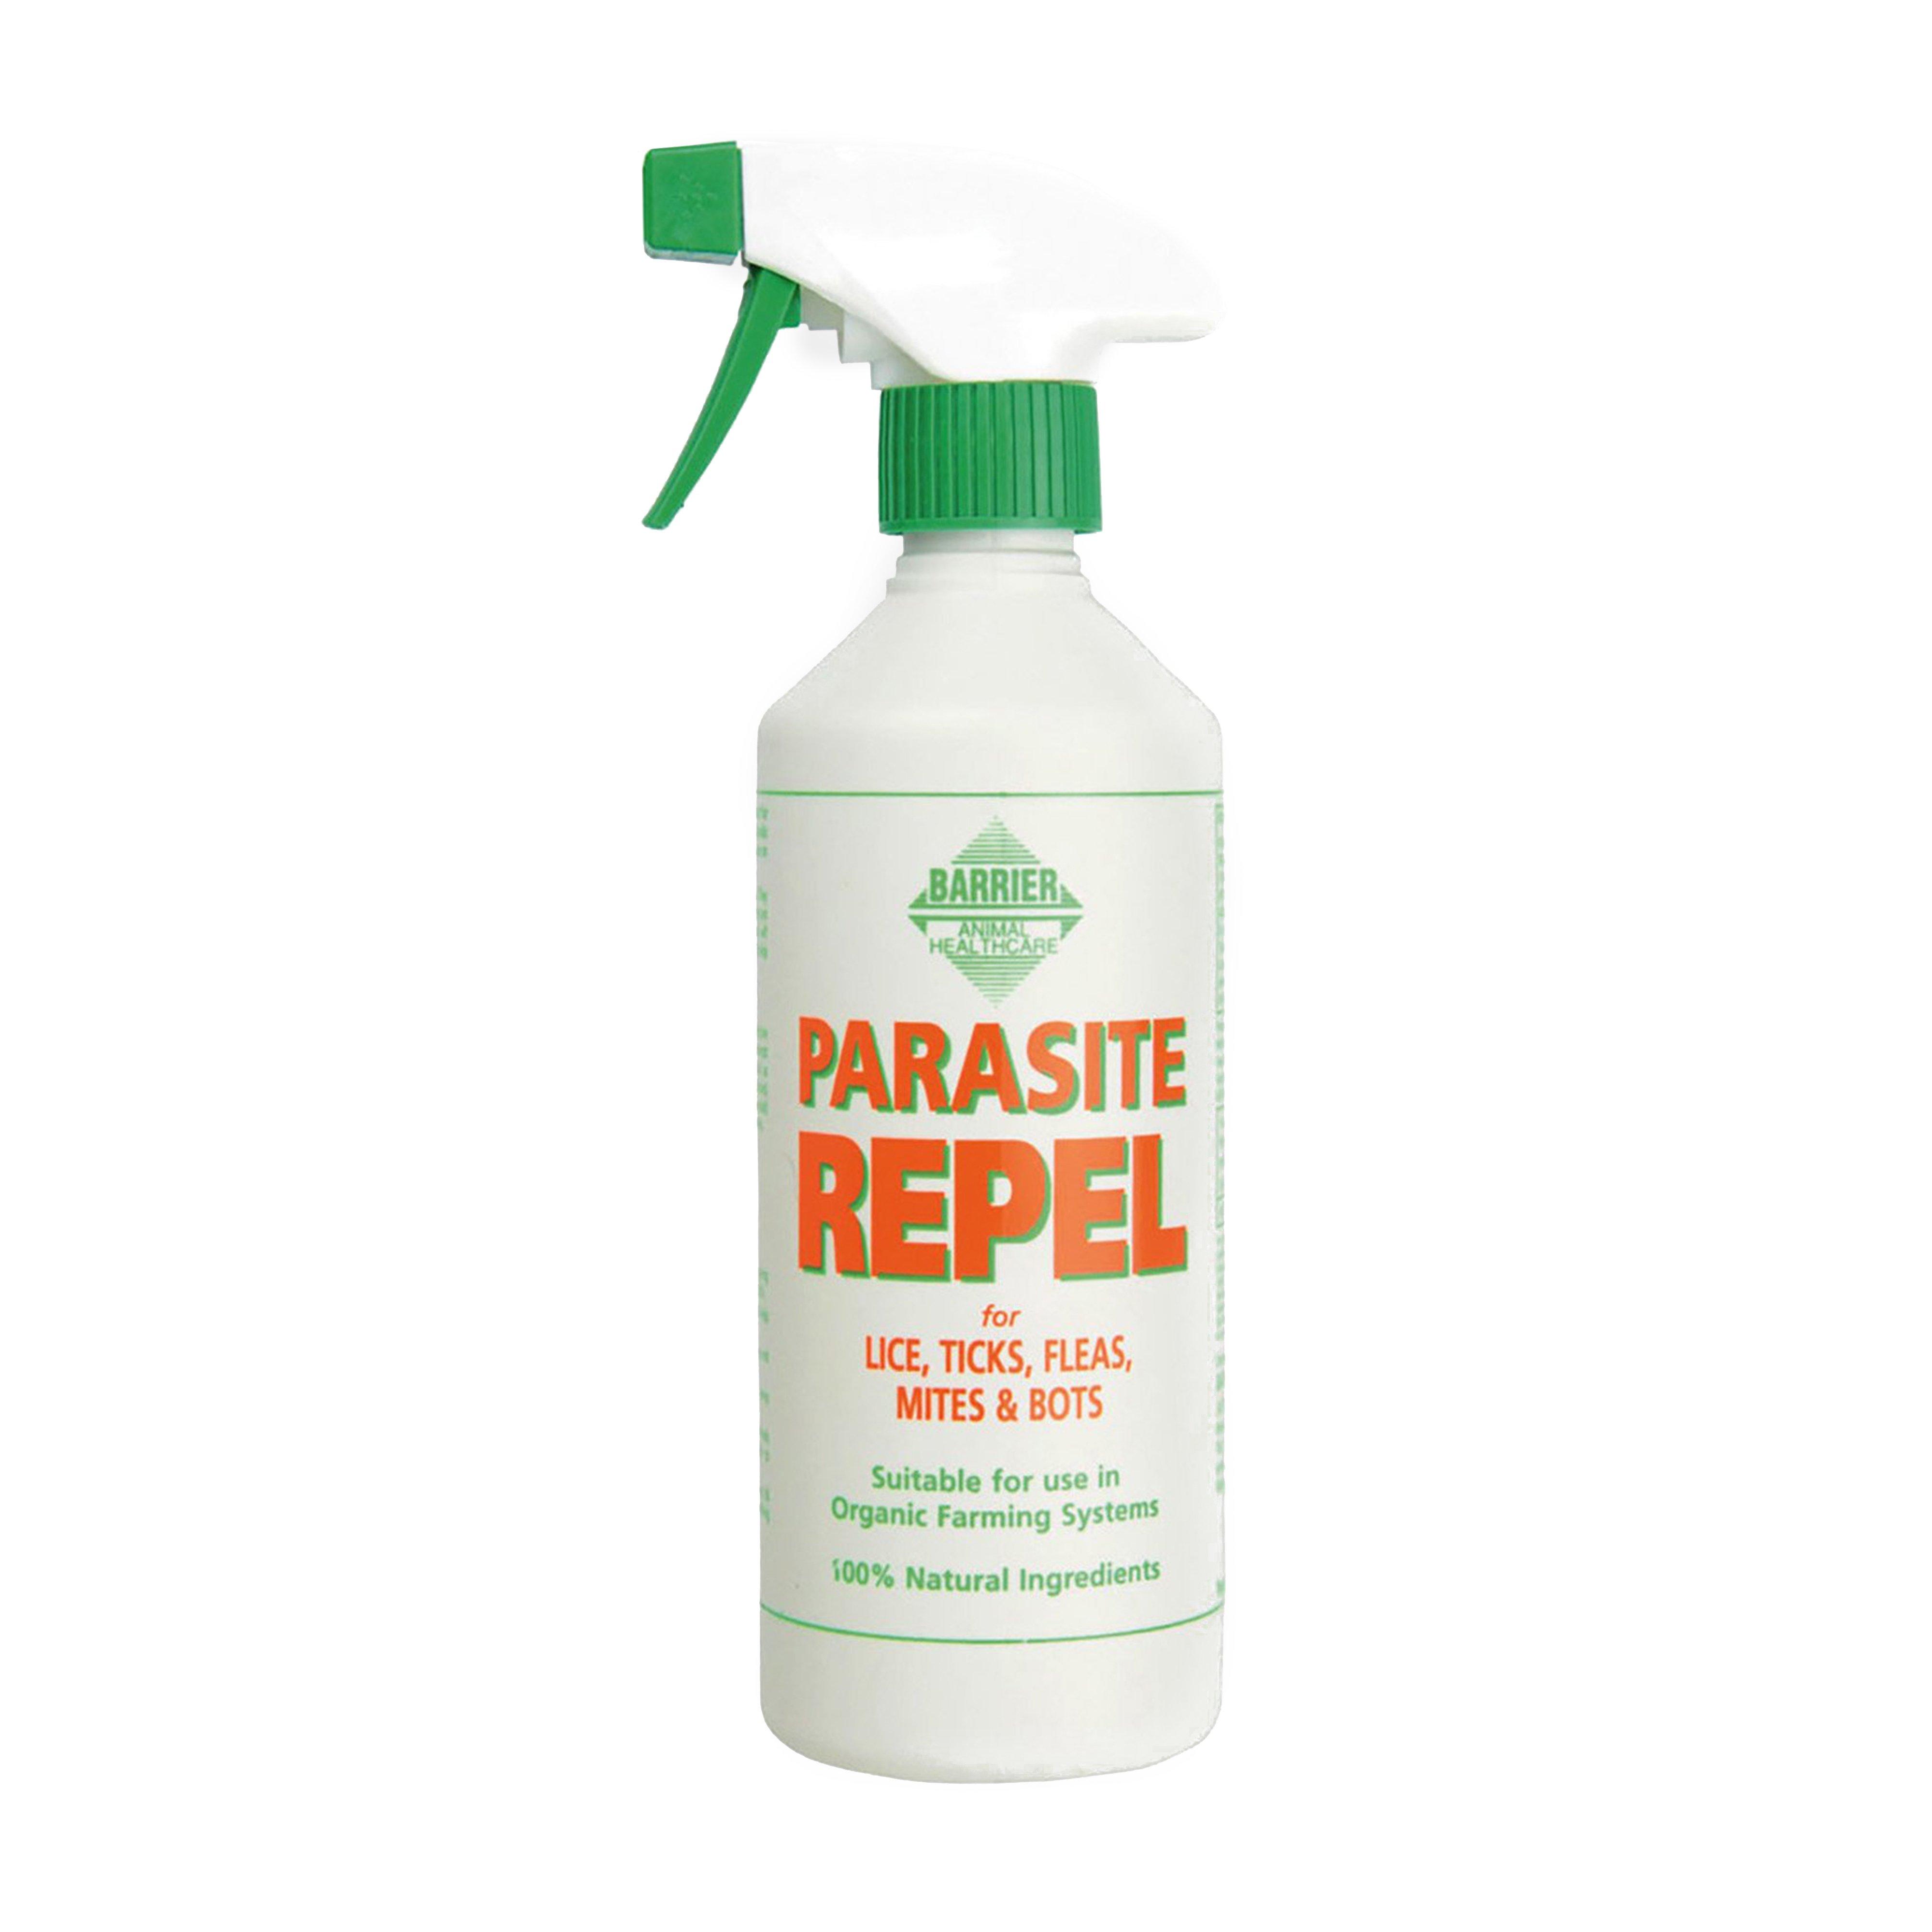 Parasite Repel Spray